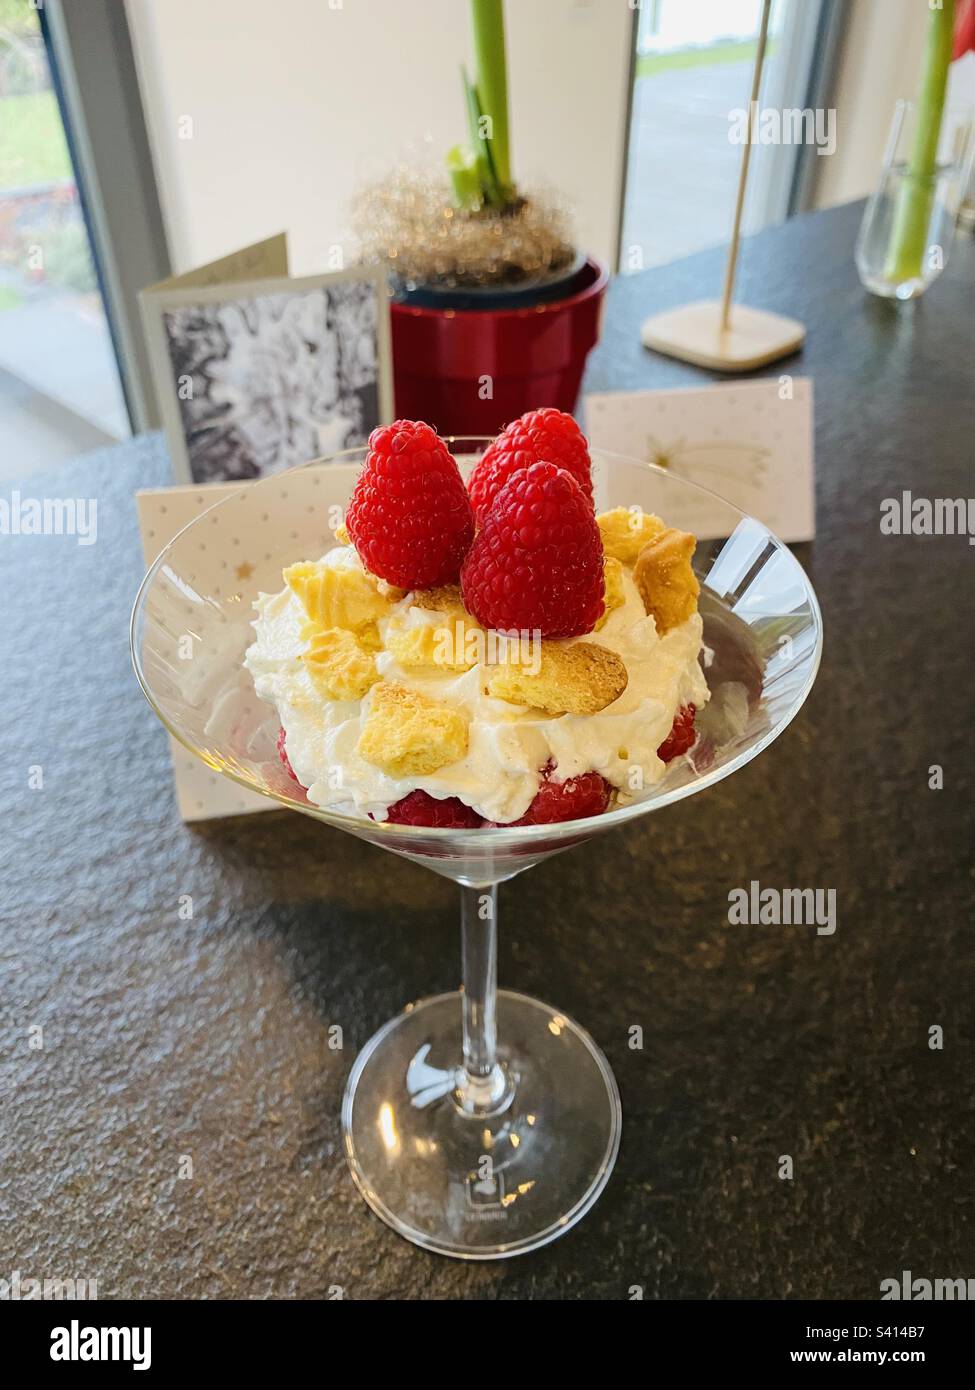 Dessert im Glas mit frischen Himbeeren/ Dessert in a glass with fresh raspberries Stock Photo